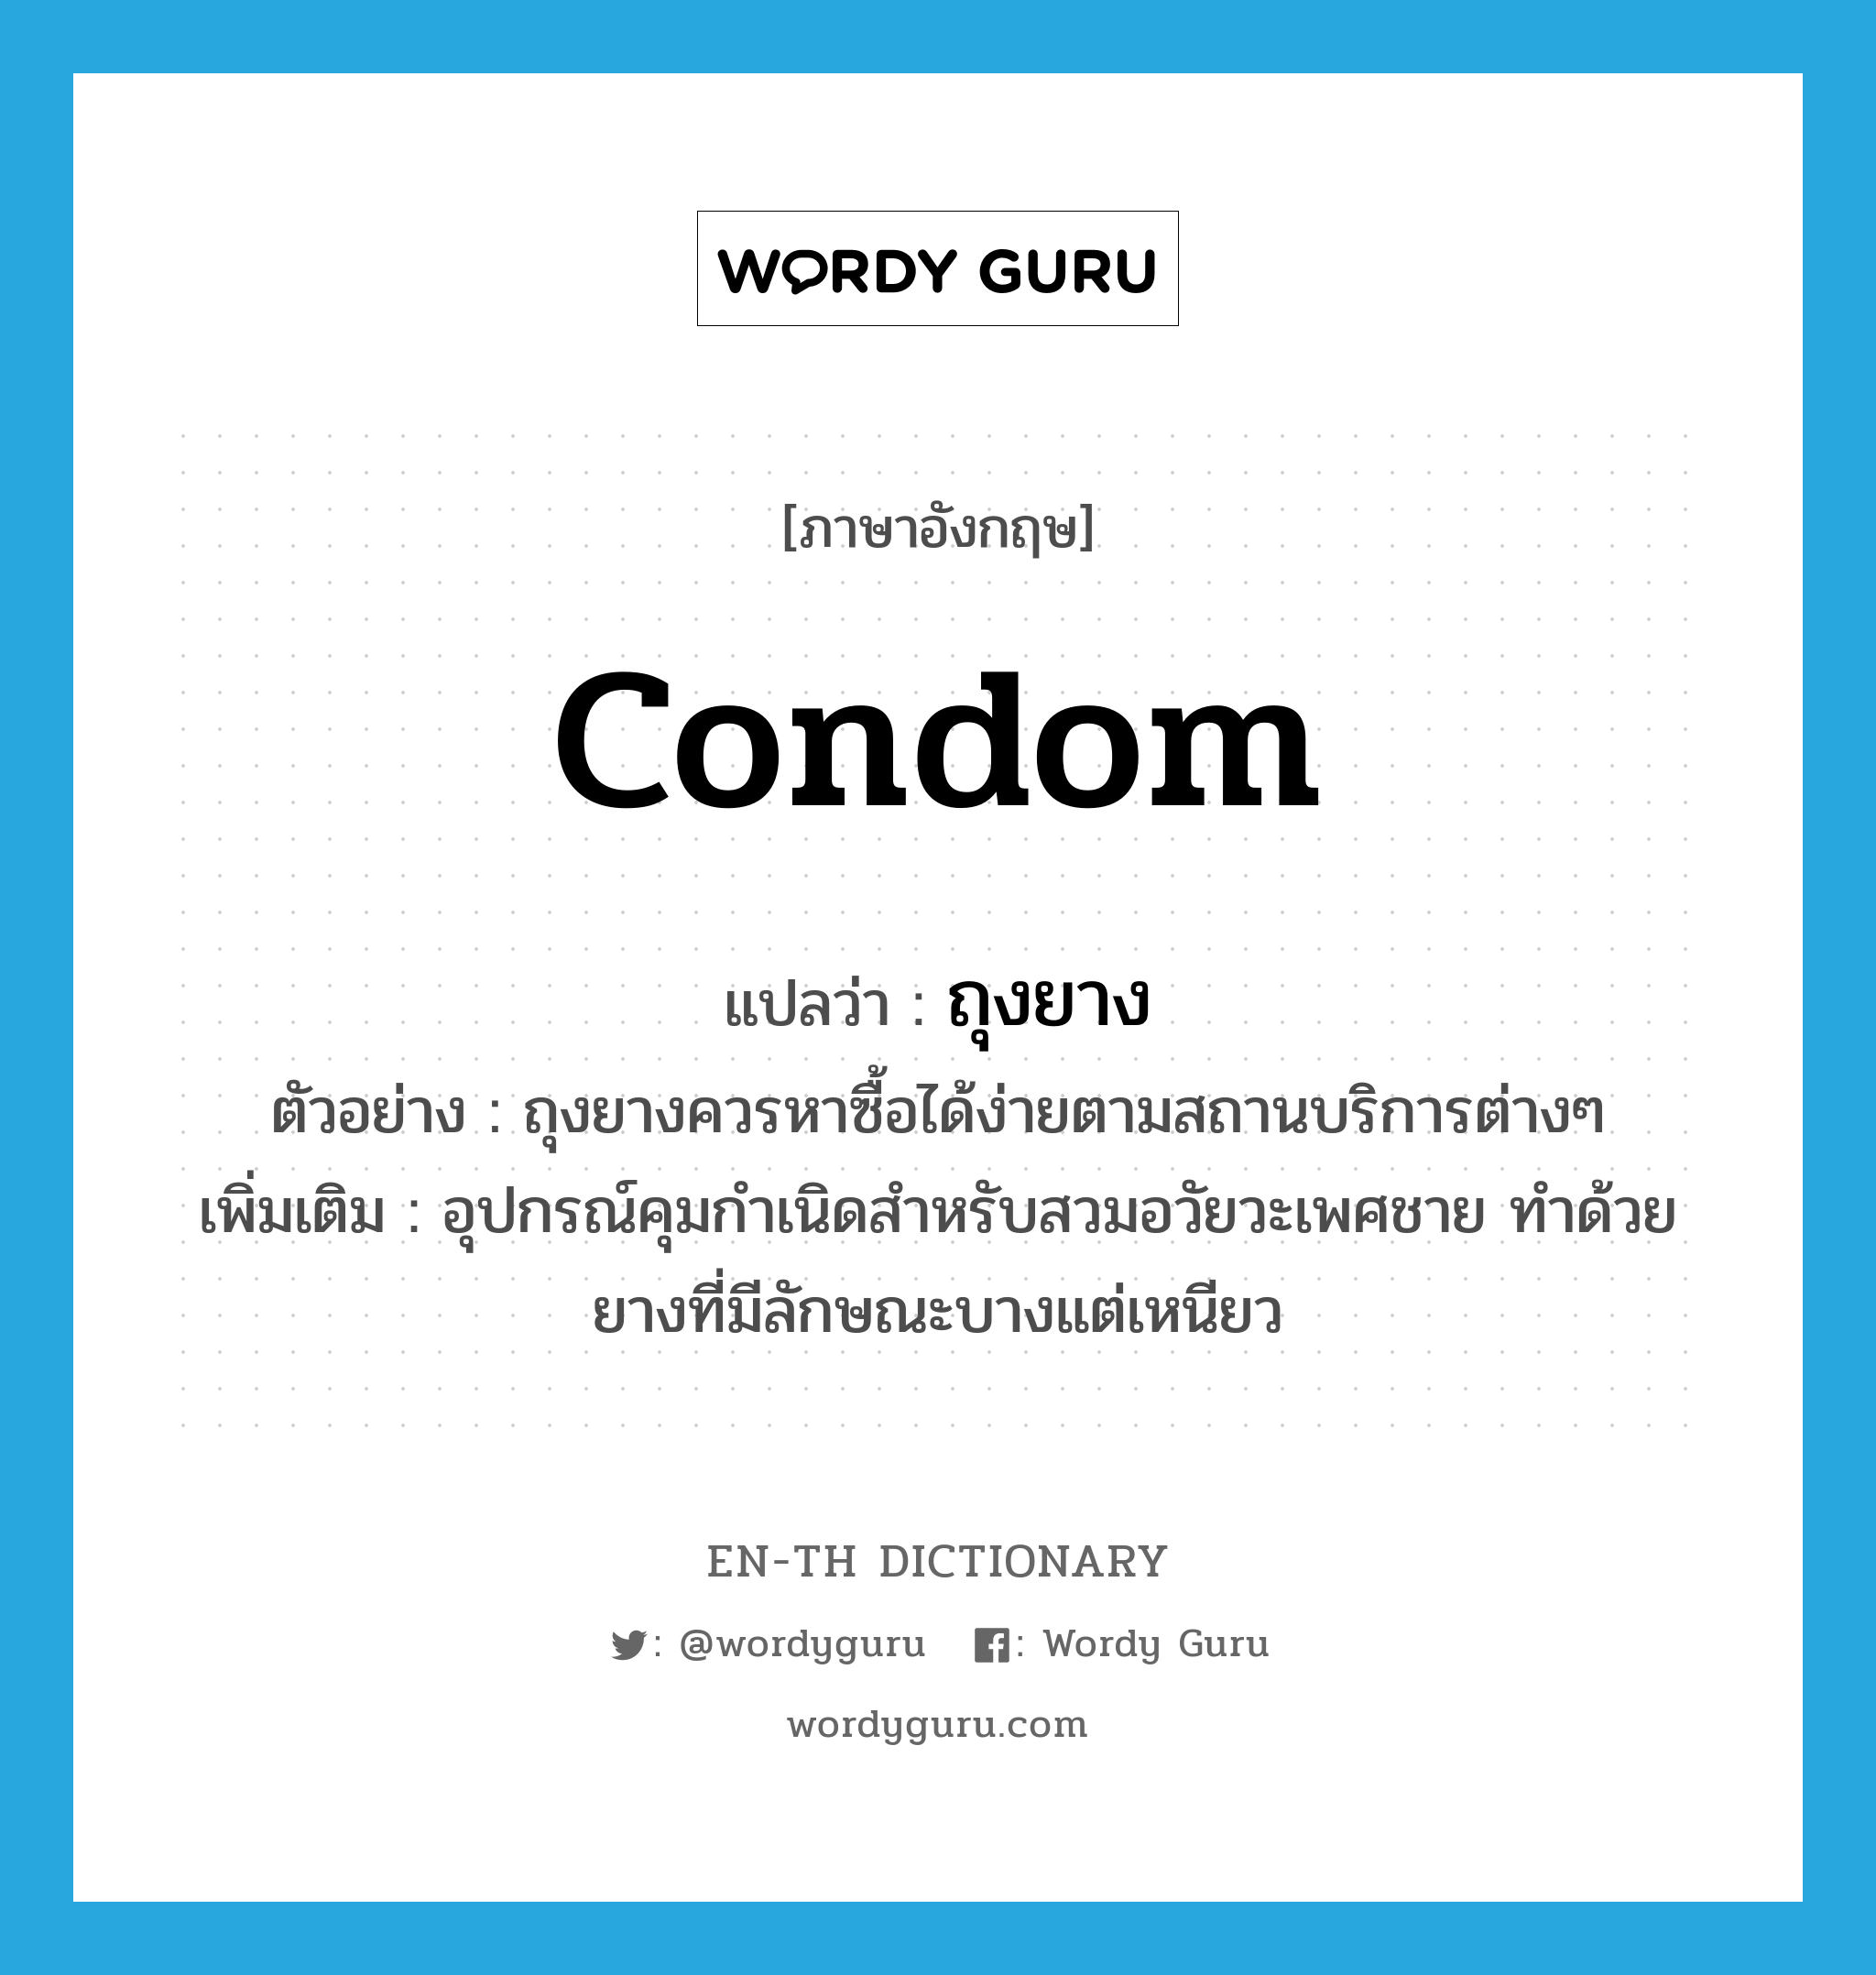 ถุงยาง ภาษาอังกฤษ?, คำศัพท์ภาษาอังกฤษ ถุงยาง แปลว่า condom ประเภท N ตัวอย่าง ถุงยางควรหาซื้อได้ง่ายตามสถานบริการต่างๆ เพิ่มเติม อุปกรณ์คุมกำเนิดสำหรับสวมอวัยวะเพศชาย ทำด้วยยางที่มีลักษณะบางแต่เหนียว หมวด N